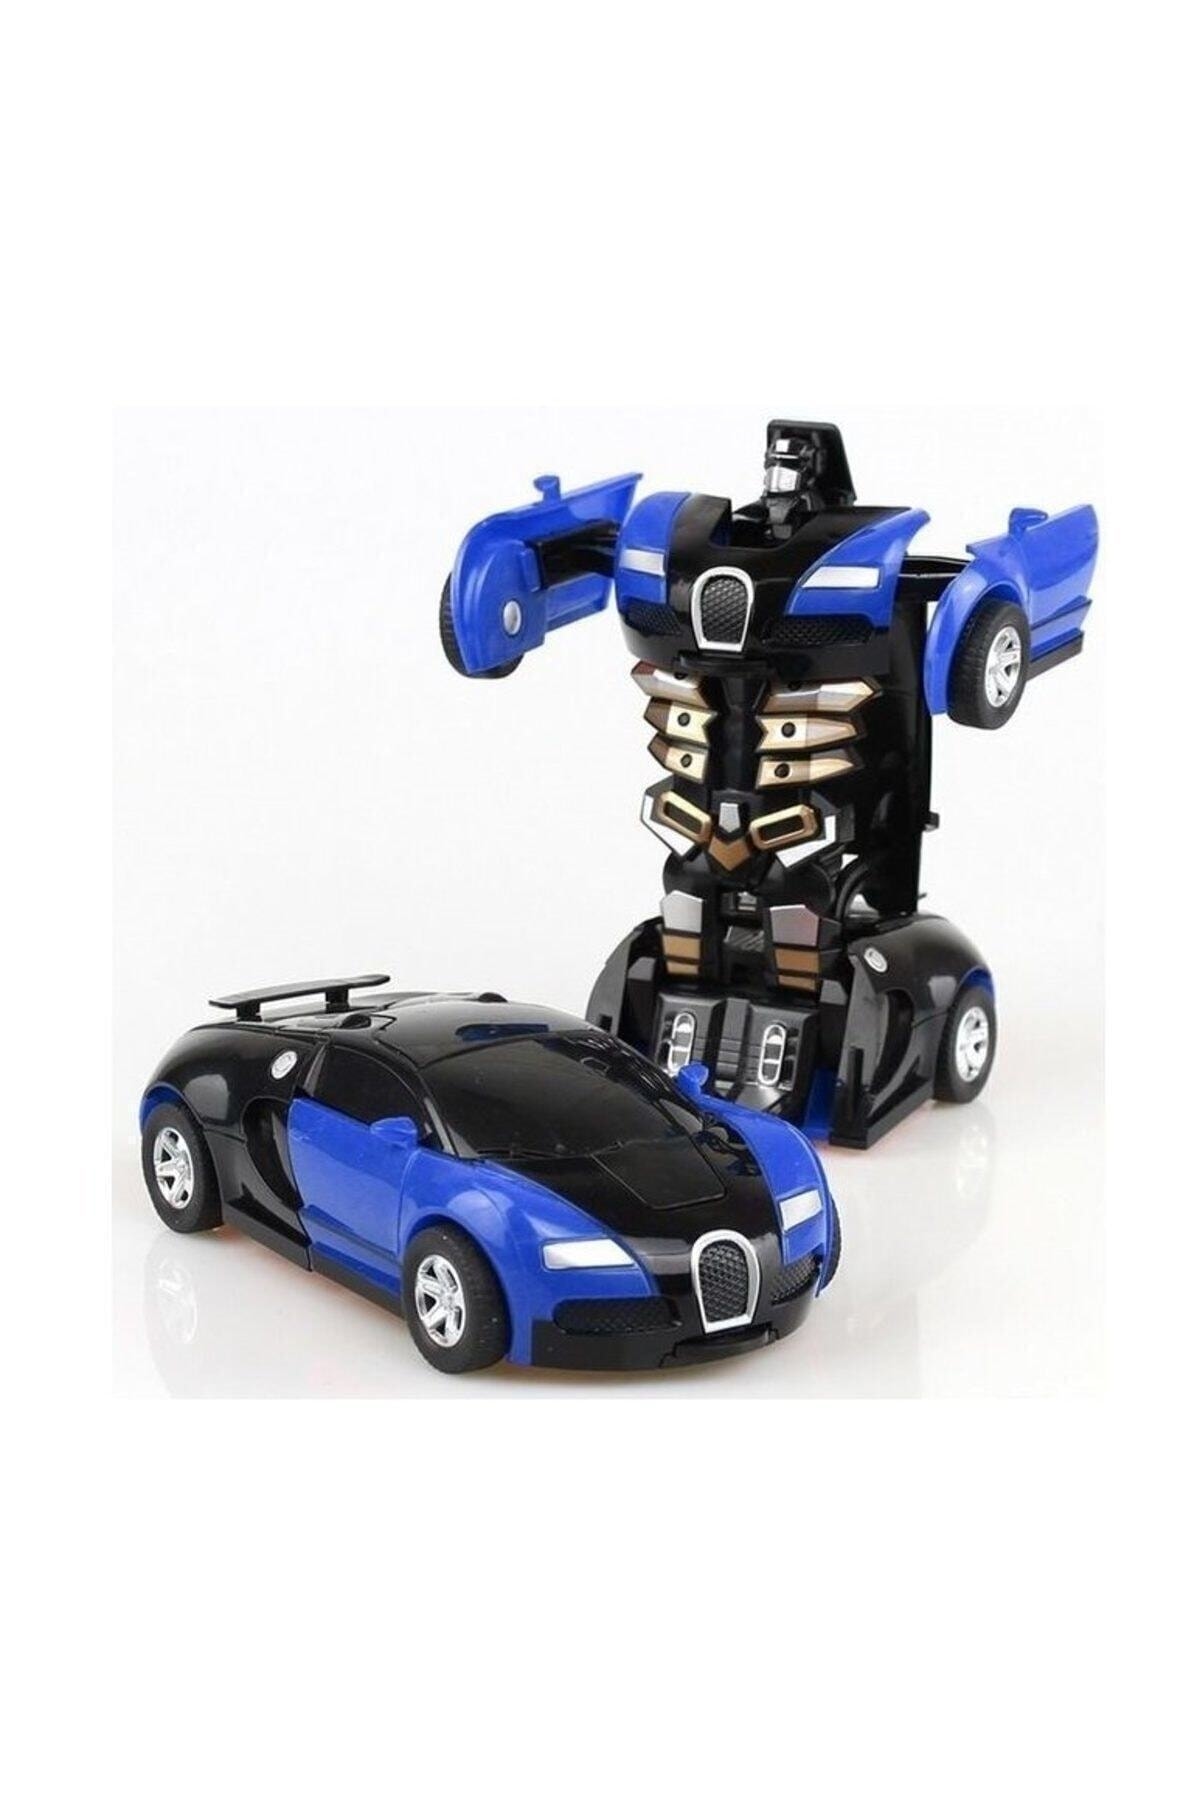  Transformers Robot Çek bırak 1:32 Kendinden Robota Dönüşebilen Araba Bugatti KZL2016-5 